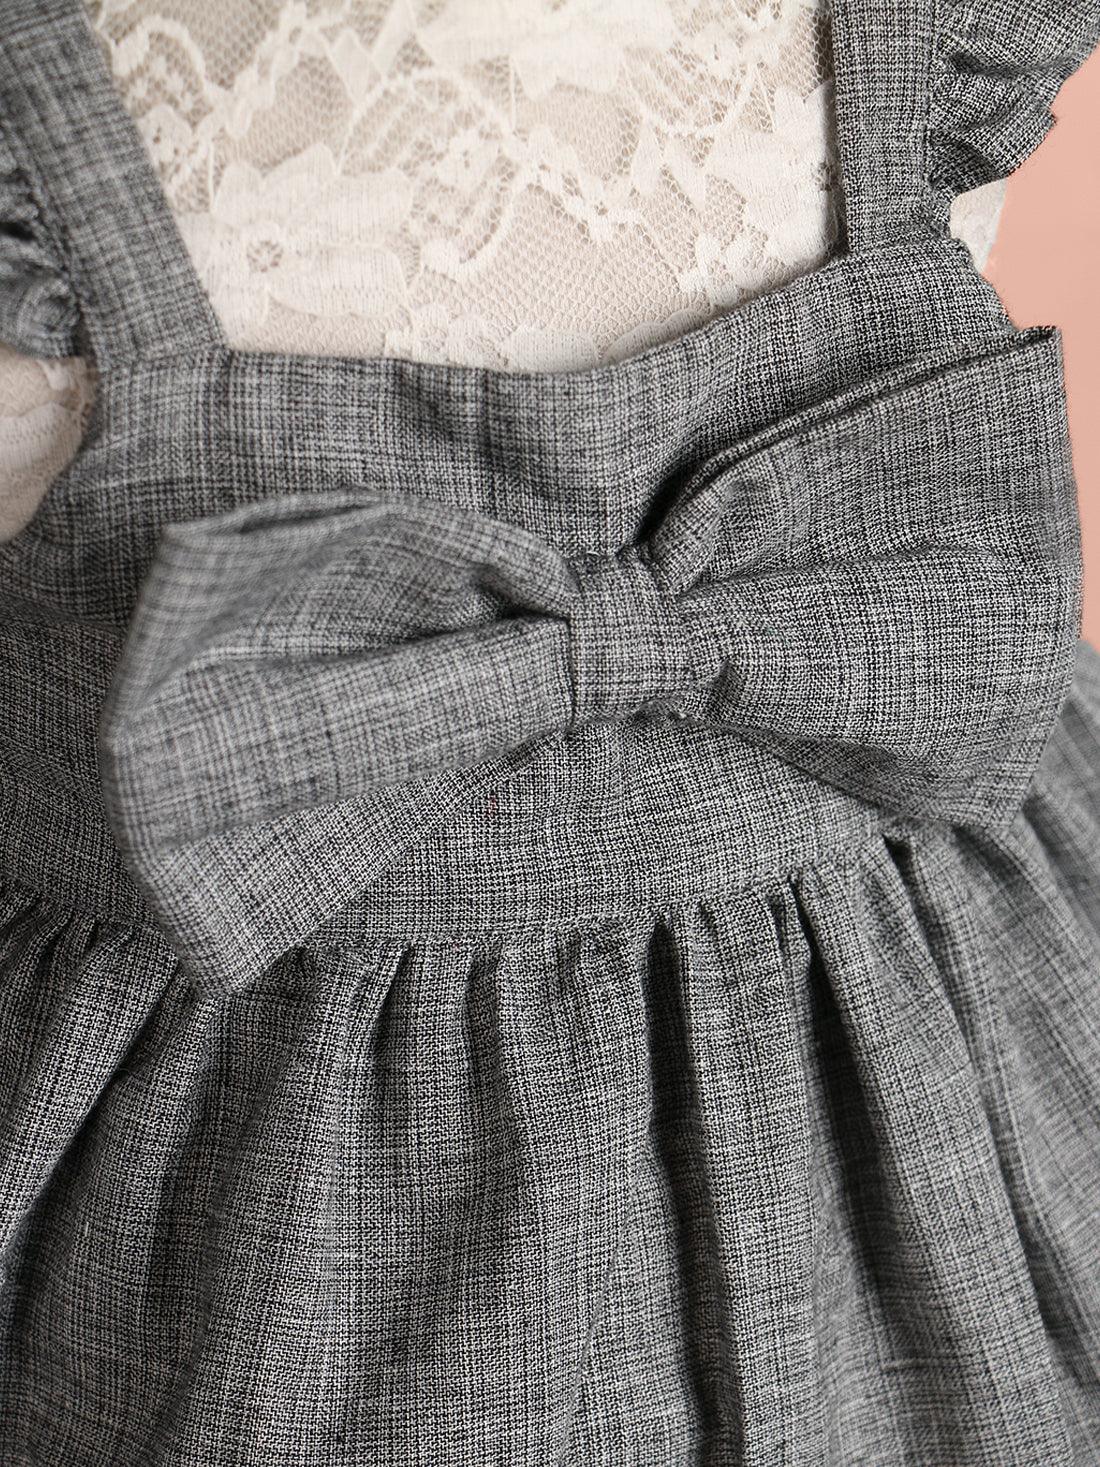 Handloom Woven Gray Girl's Fit & Flare Dress WeaversKnot 